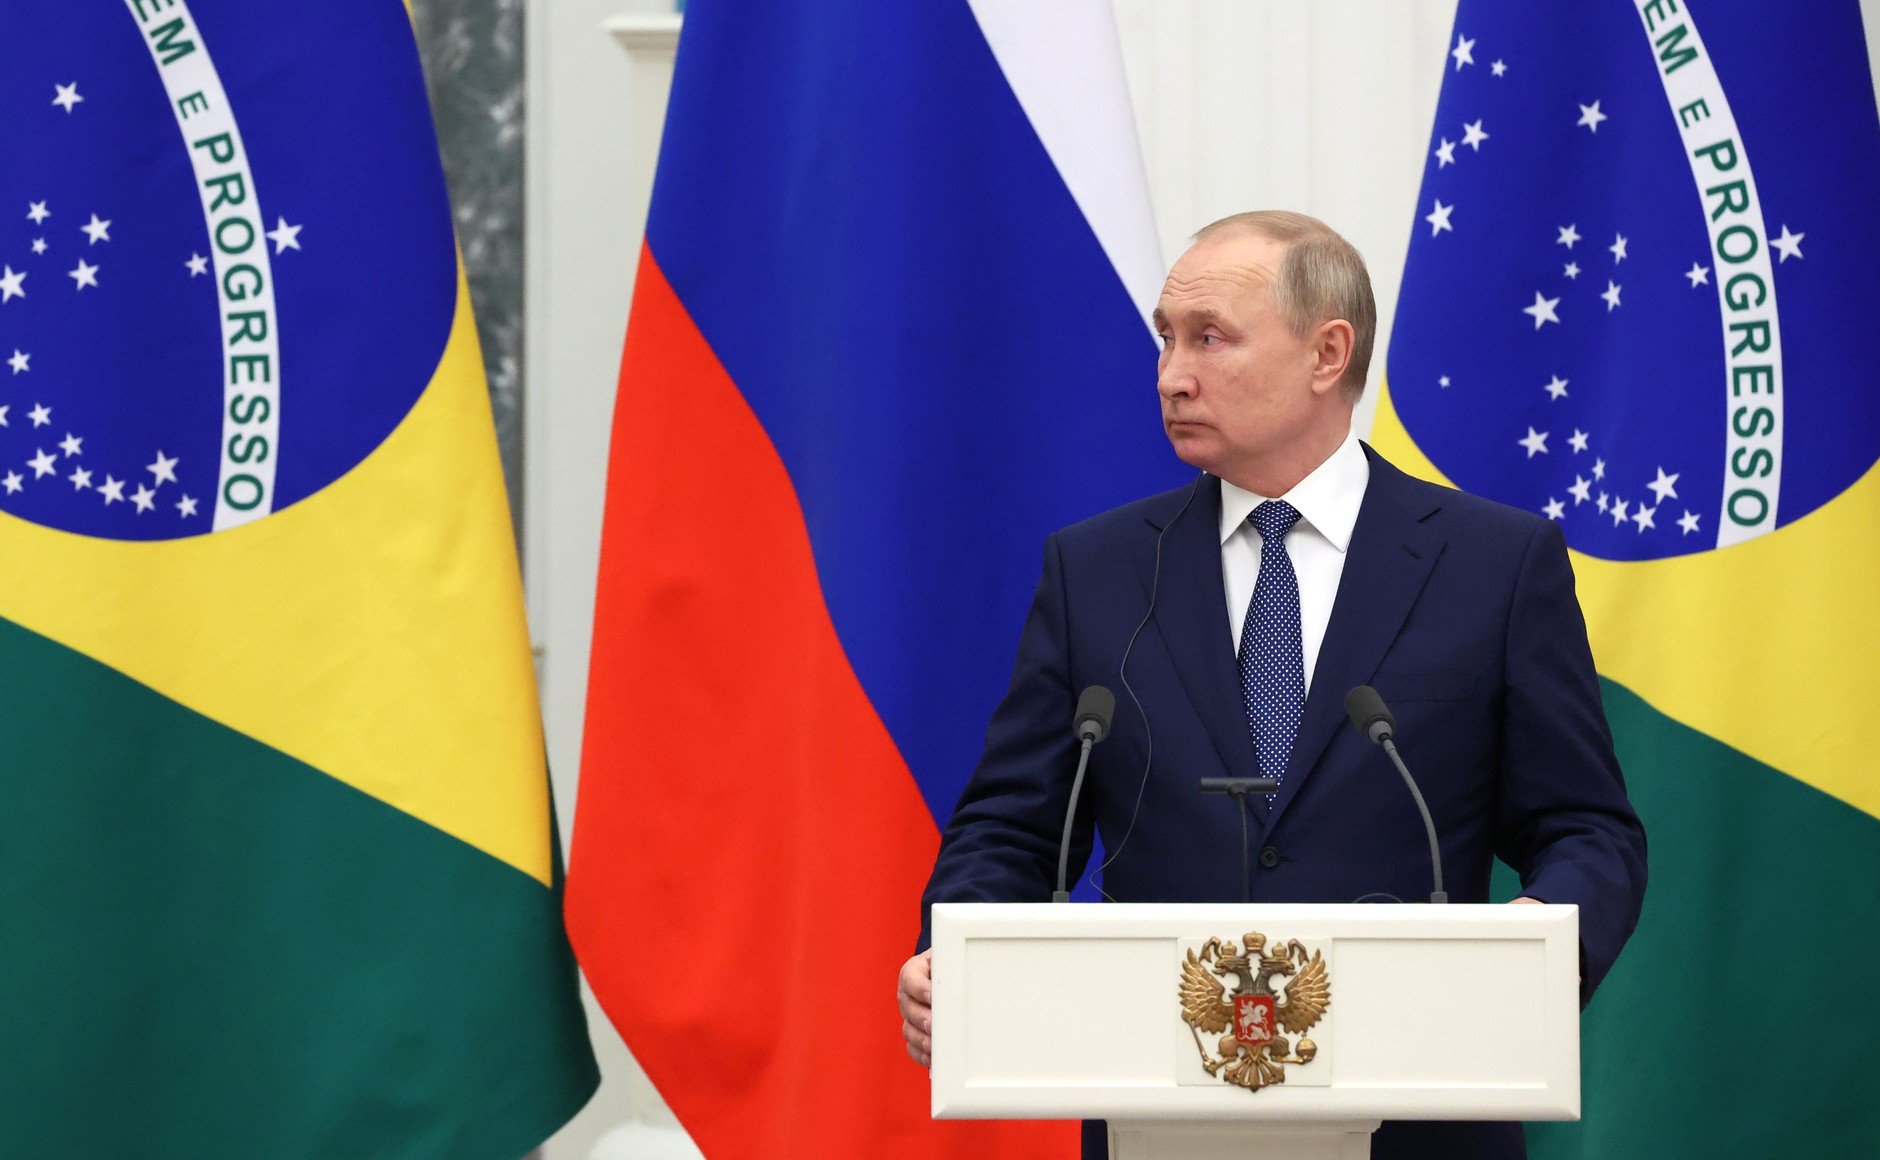 Novo embargo europeu ao óleo da Rússia entra em vigor. Na imagem: Vladimir Putin, presidente da Rússia (Foto: Vyacheslav Prokofyev/TASS)